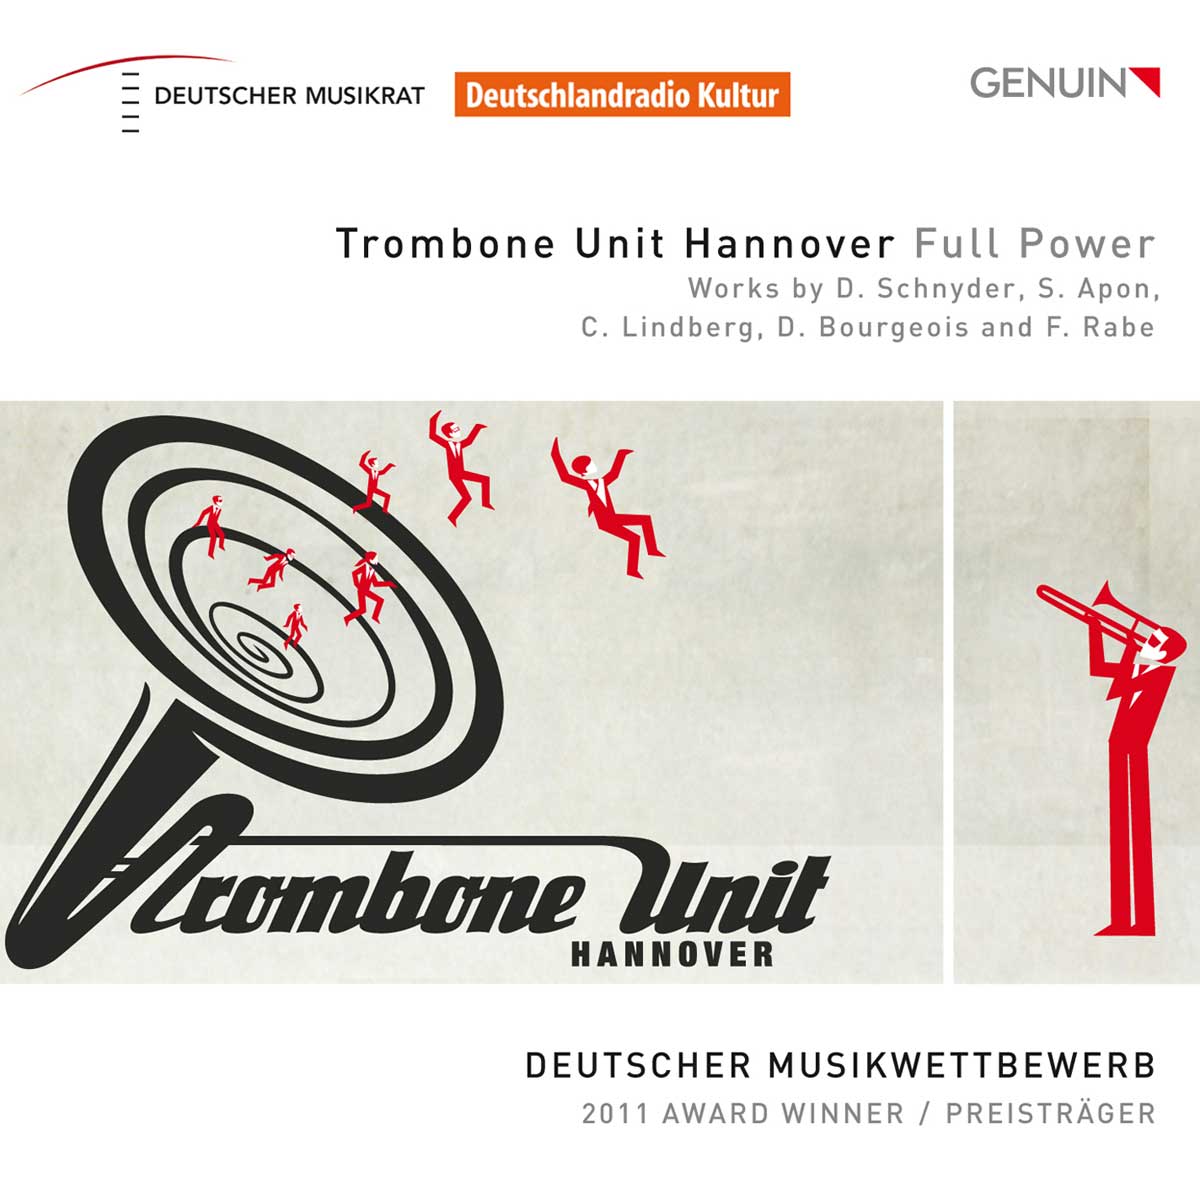 CD album cover 'Trombone Unit Hannover - Full Power' (GEN 13270) with Trombone Unit Hannover